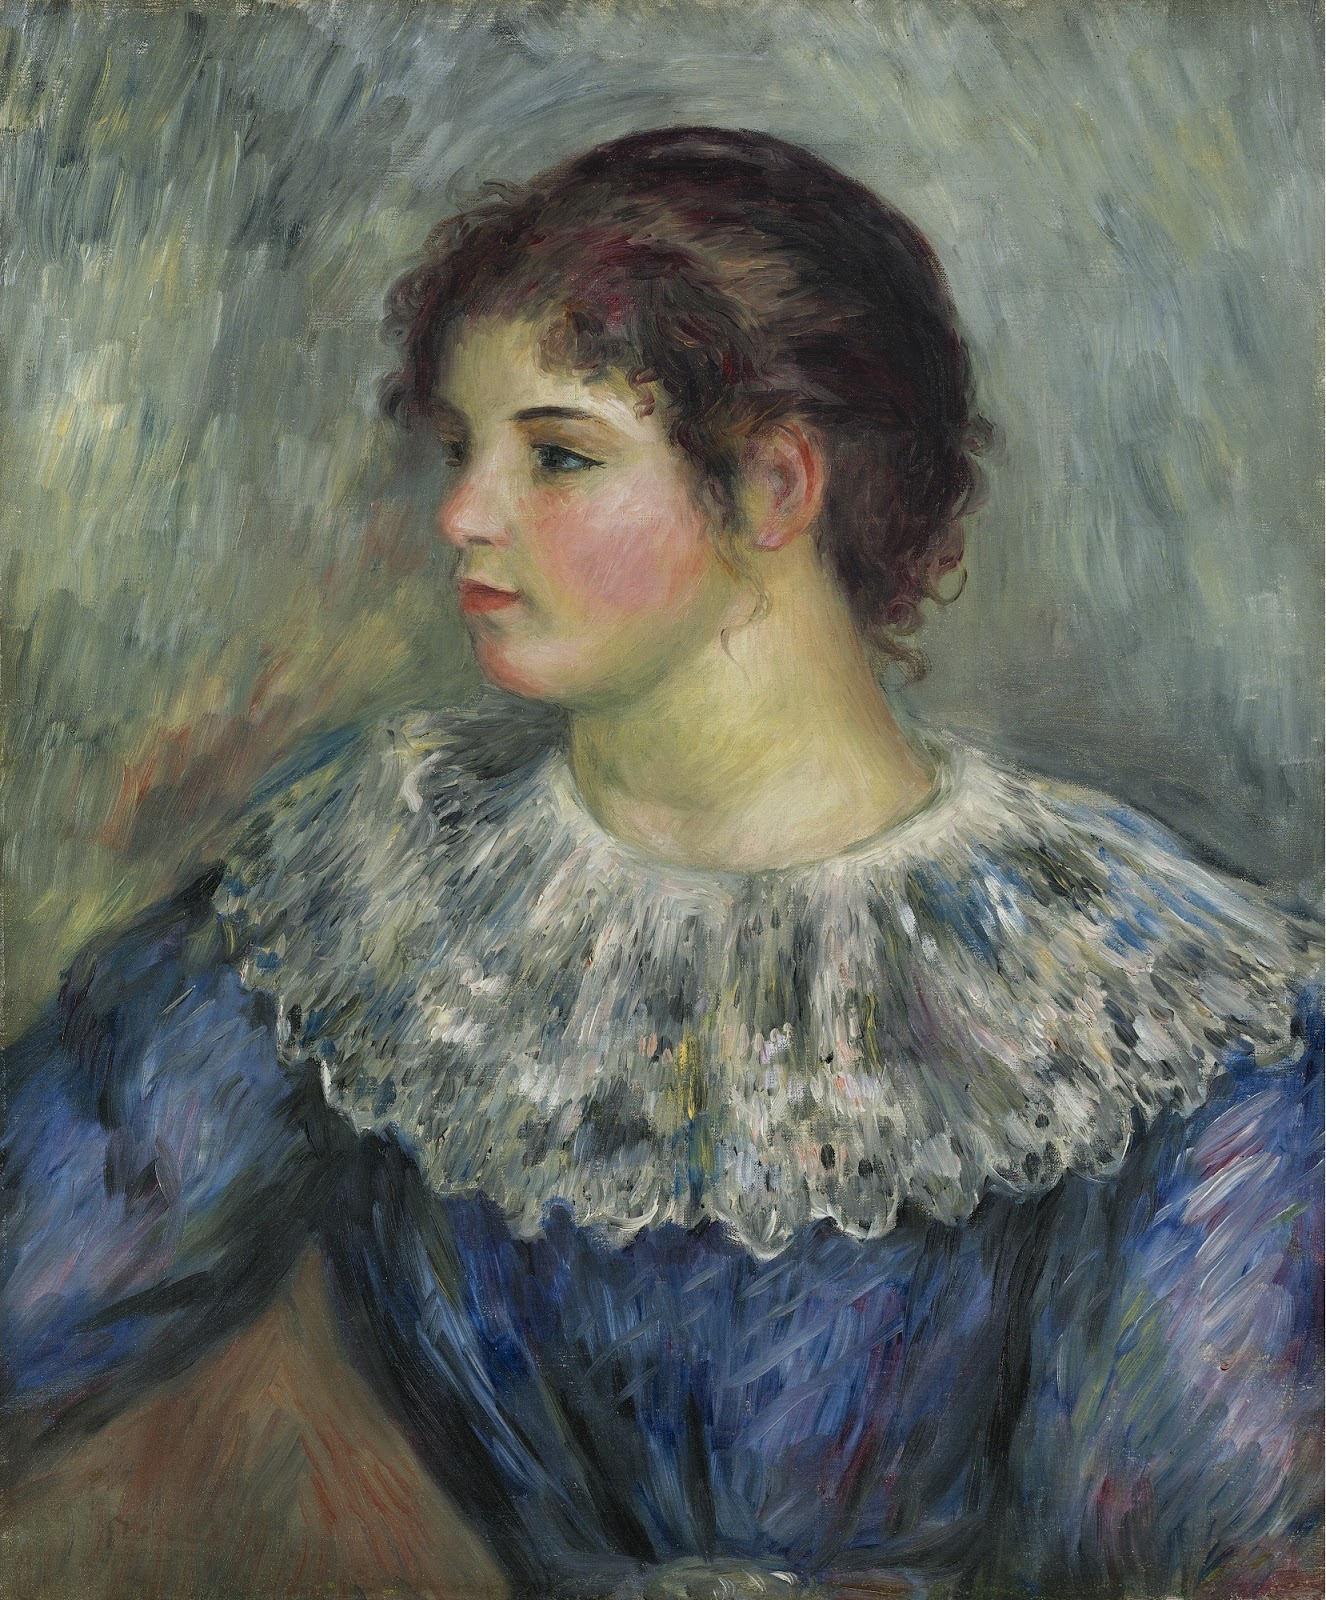 Pierre+Auguste+Renoir-1841-1-19 (851).jpg